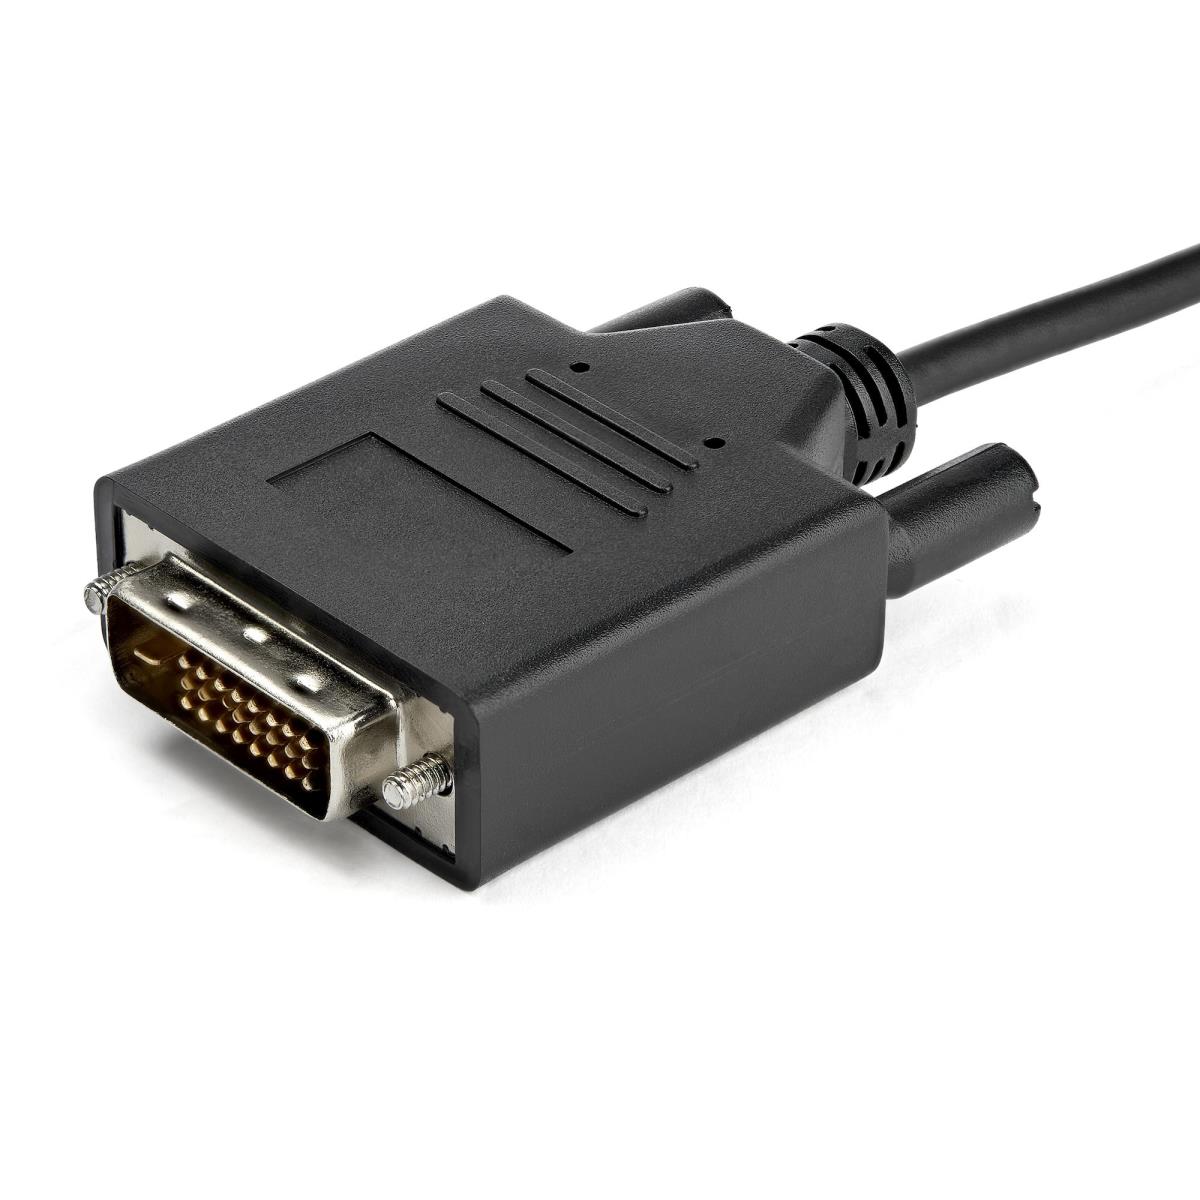 Câble Mini HDMI vers DVI de 1m - Câble DVI-D vers HDMI (1920x1200p) - Mini  HDMI Mâle 19 Broches vers DVI-D Mâle - Câble Convertisseur pour Moniteur